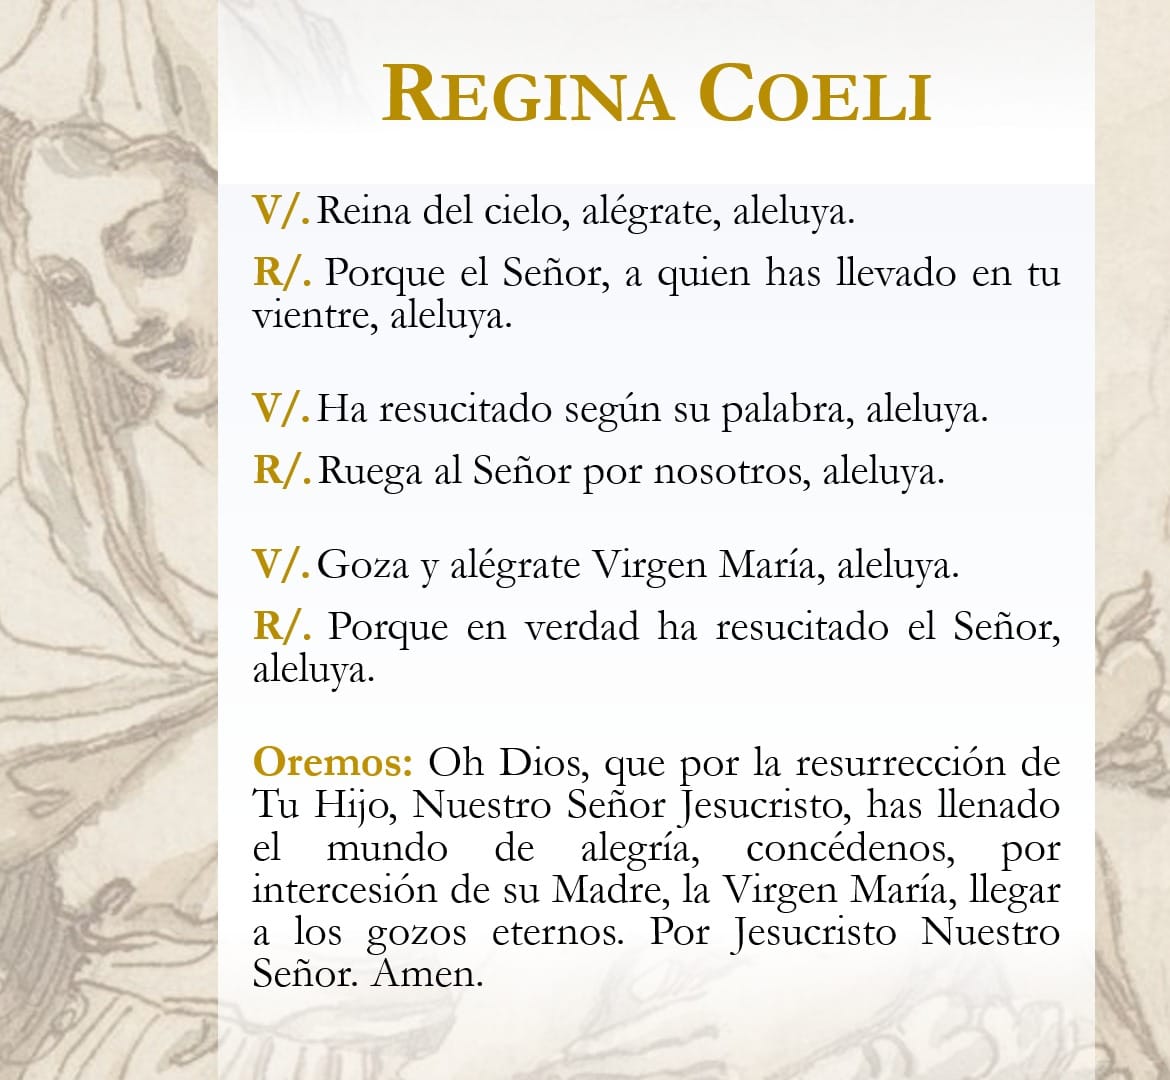 SÁBADO, DÍA DE LA VIRGEN. Durante el tiempo Pascual se sustituye el rezo del Ángelus por el Regina Coeli ('Reina del cielo, alégrate') desde que así lo estableciera S.S. Benedicto XIV en 1742. 📸 Fco. Borja Chamorro.